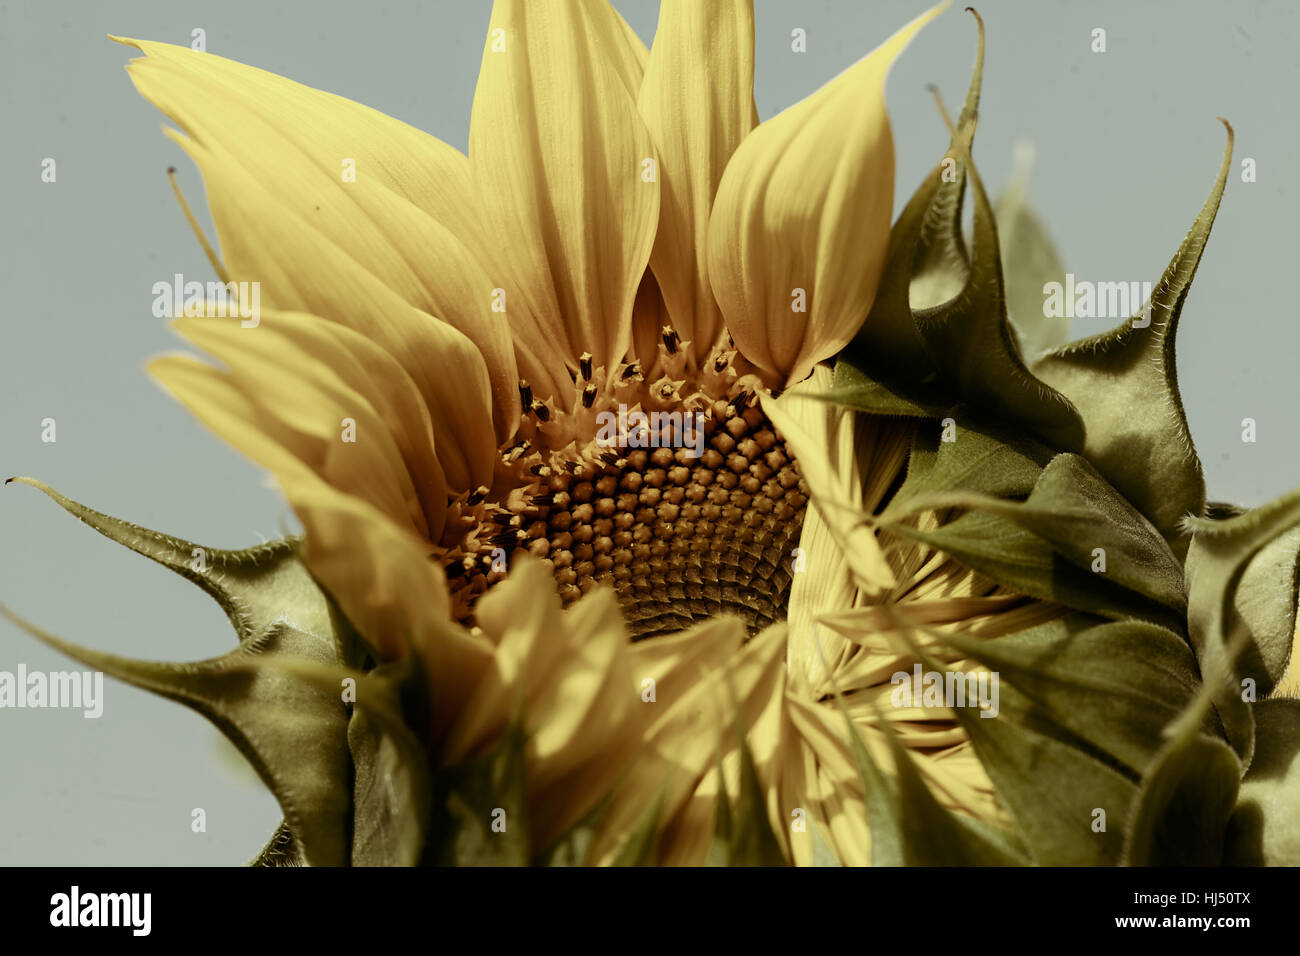 Sonnenblume vor der Öffnung der Blüte, geringe Schärfentiefe Hinweis Stockfoto